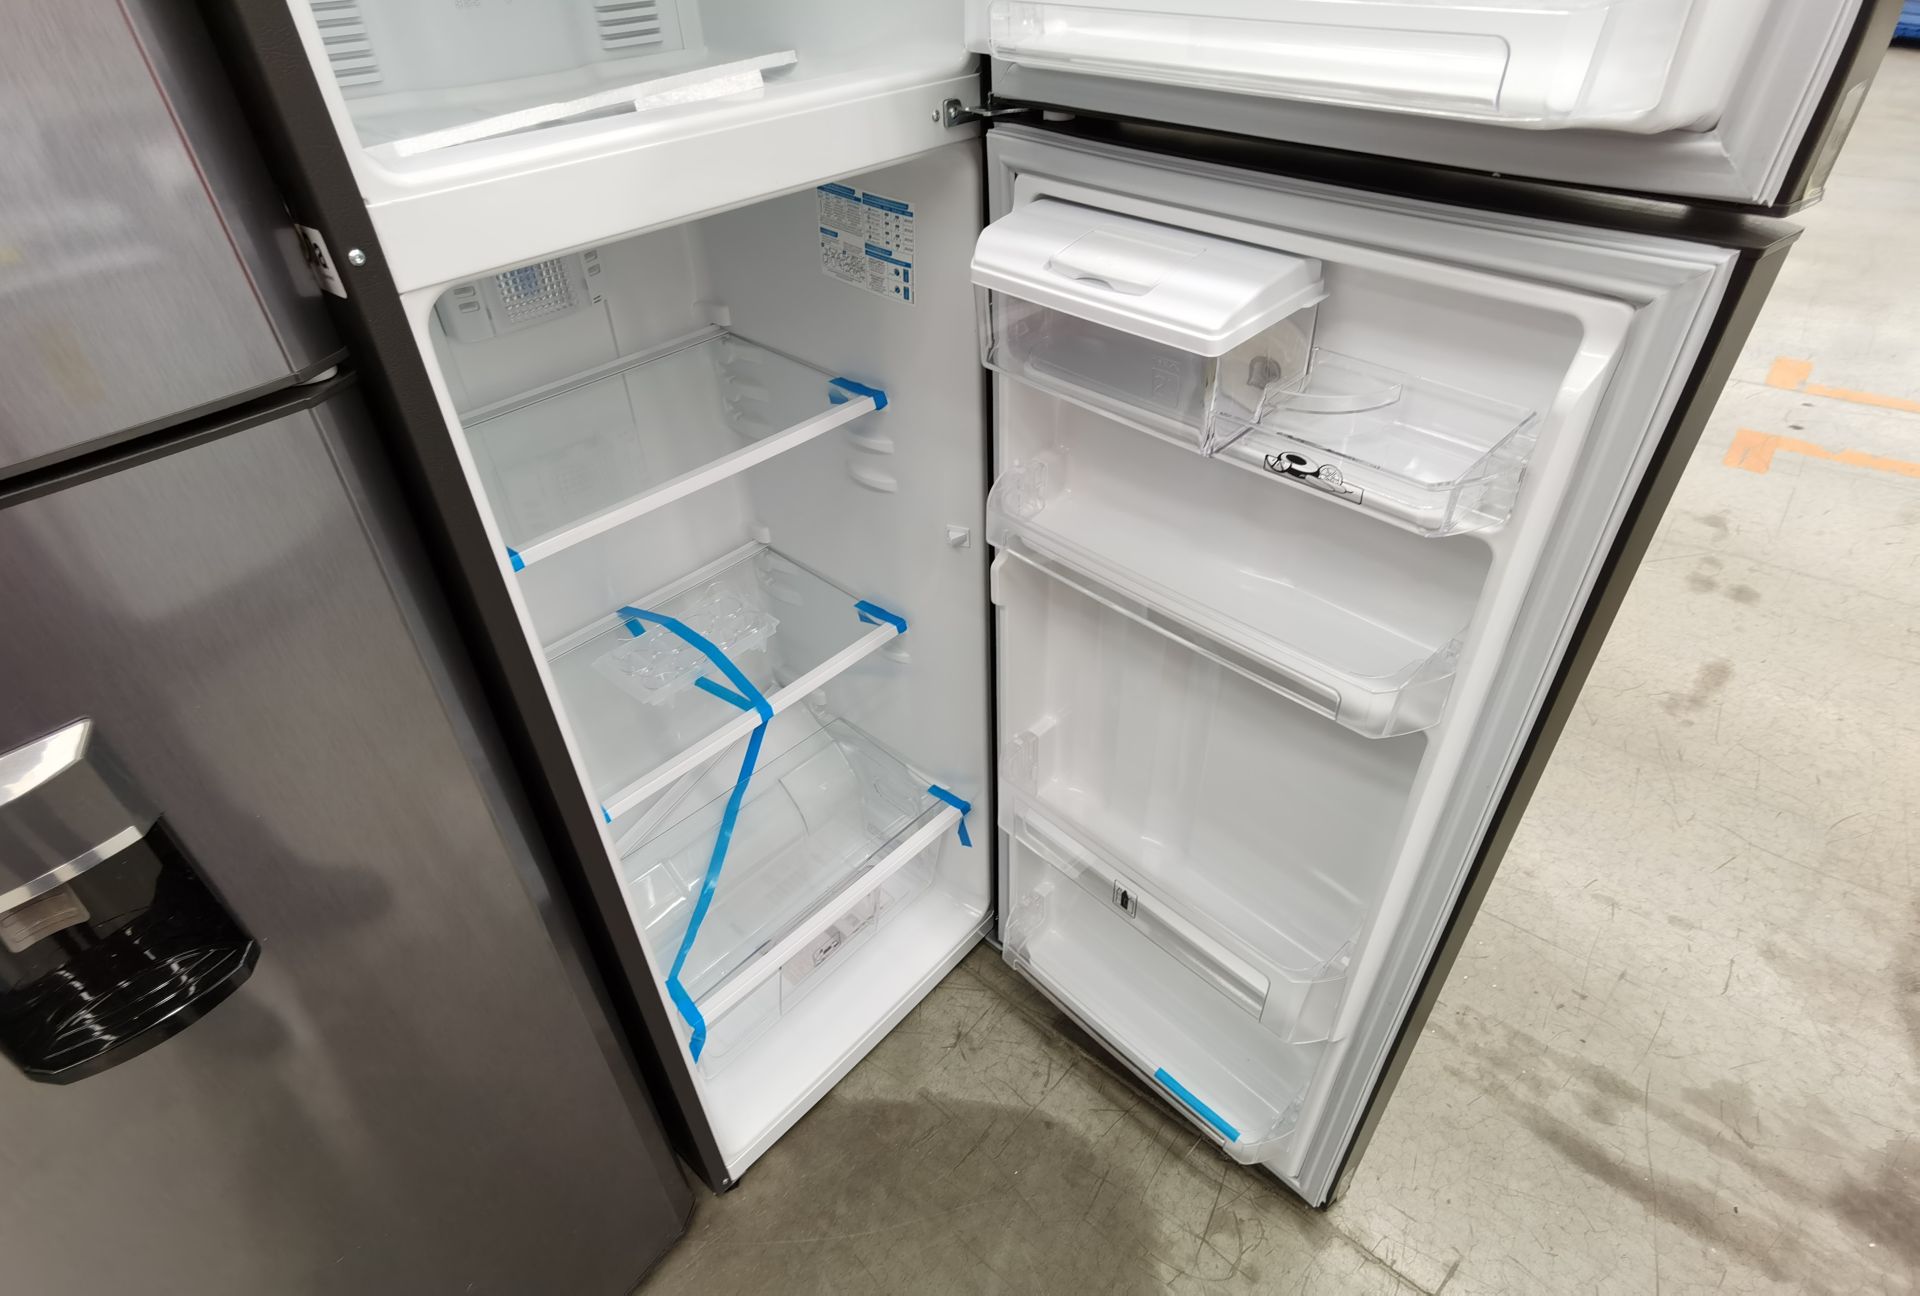 1 Refrigerador Marca Mabe, Modelo RMA300FJMR, Serie 2206B715895, Color Gris - Image 5 of 6